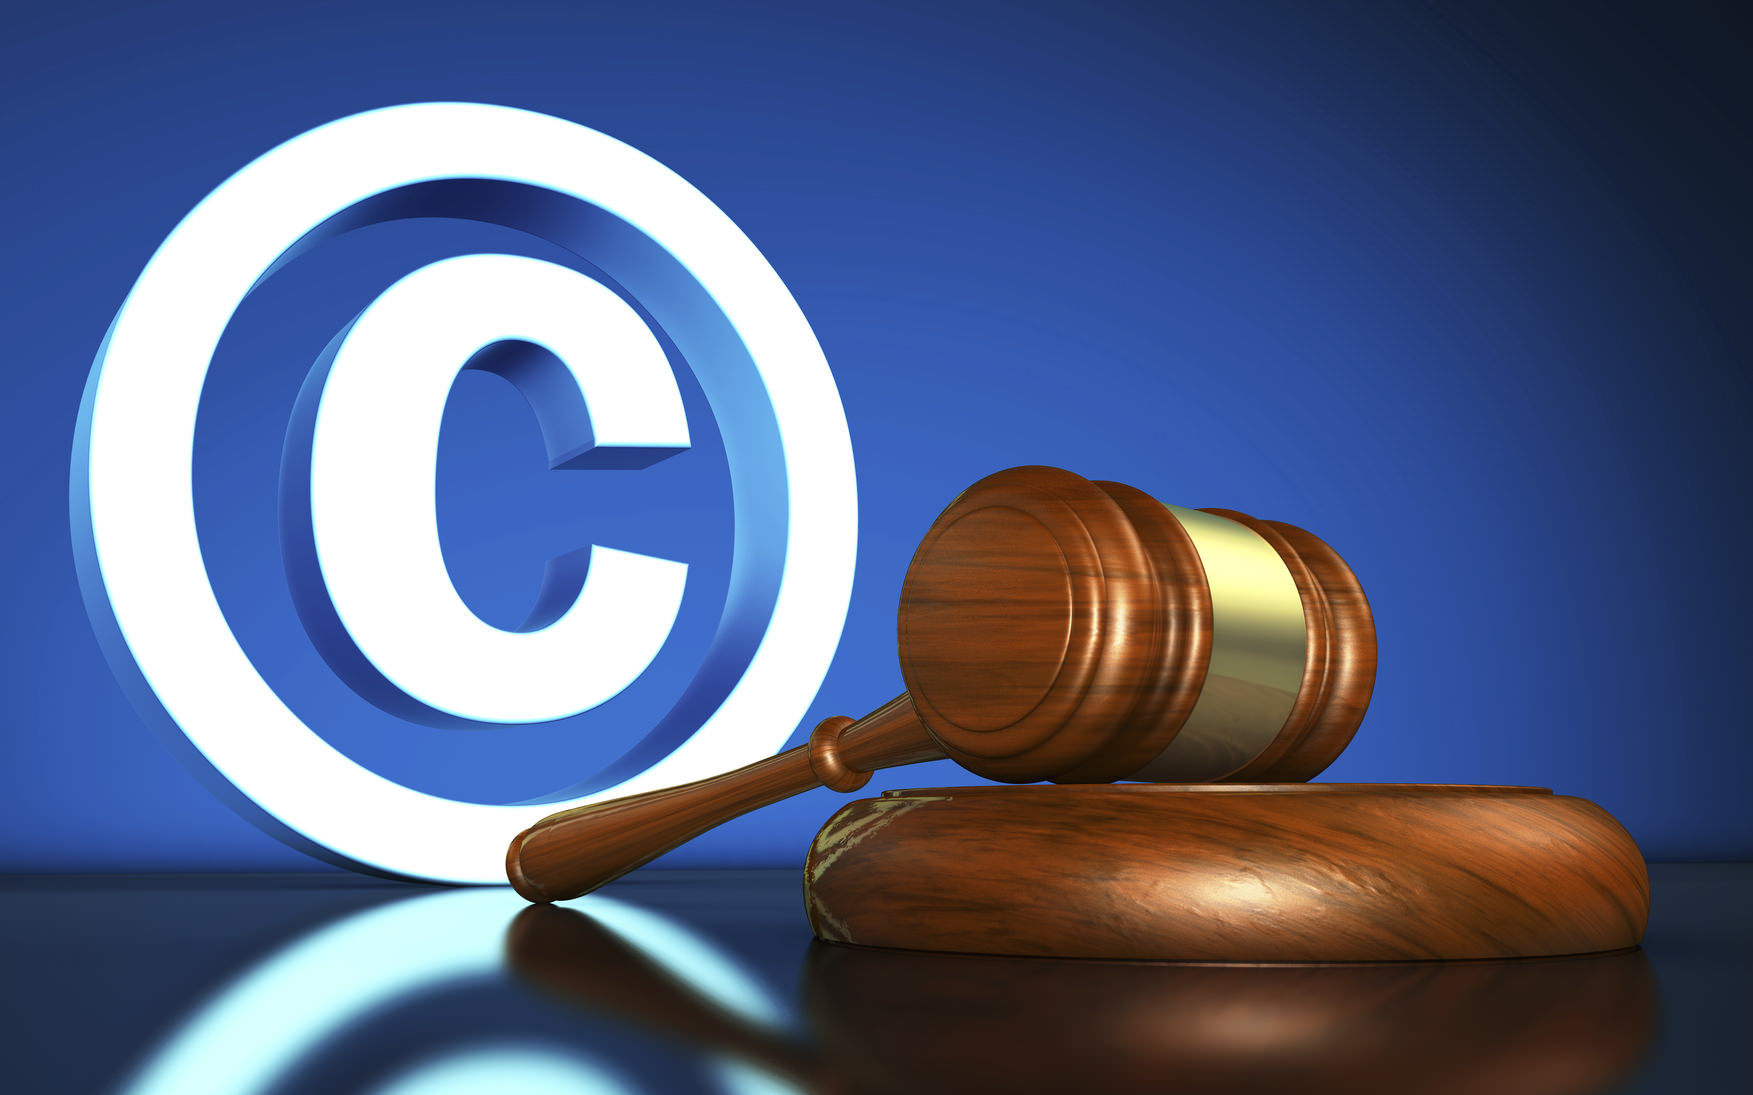 Особенности защиты авторских прав